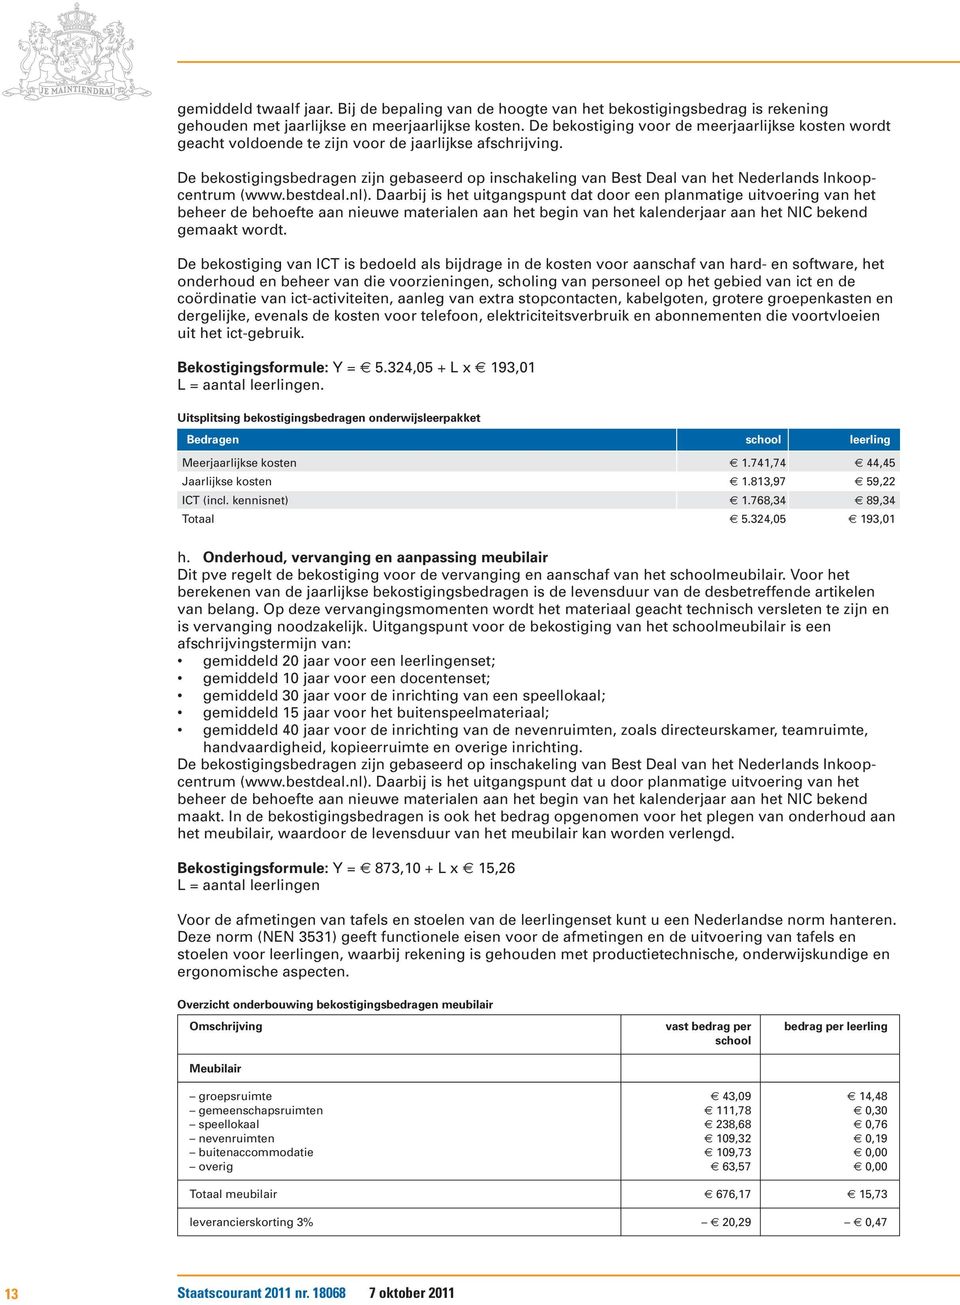 De bekostigingsbedragen zijn gebaseerd op inschakeling van Best Deal van het Nederlands Inkoopcentrum (www.bestdeal.nl).